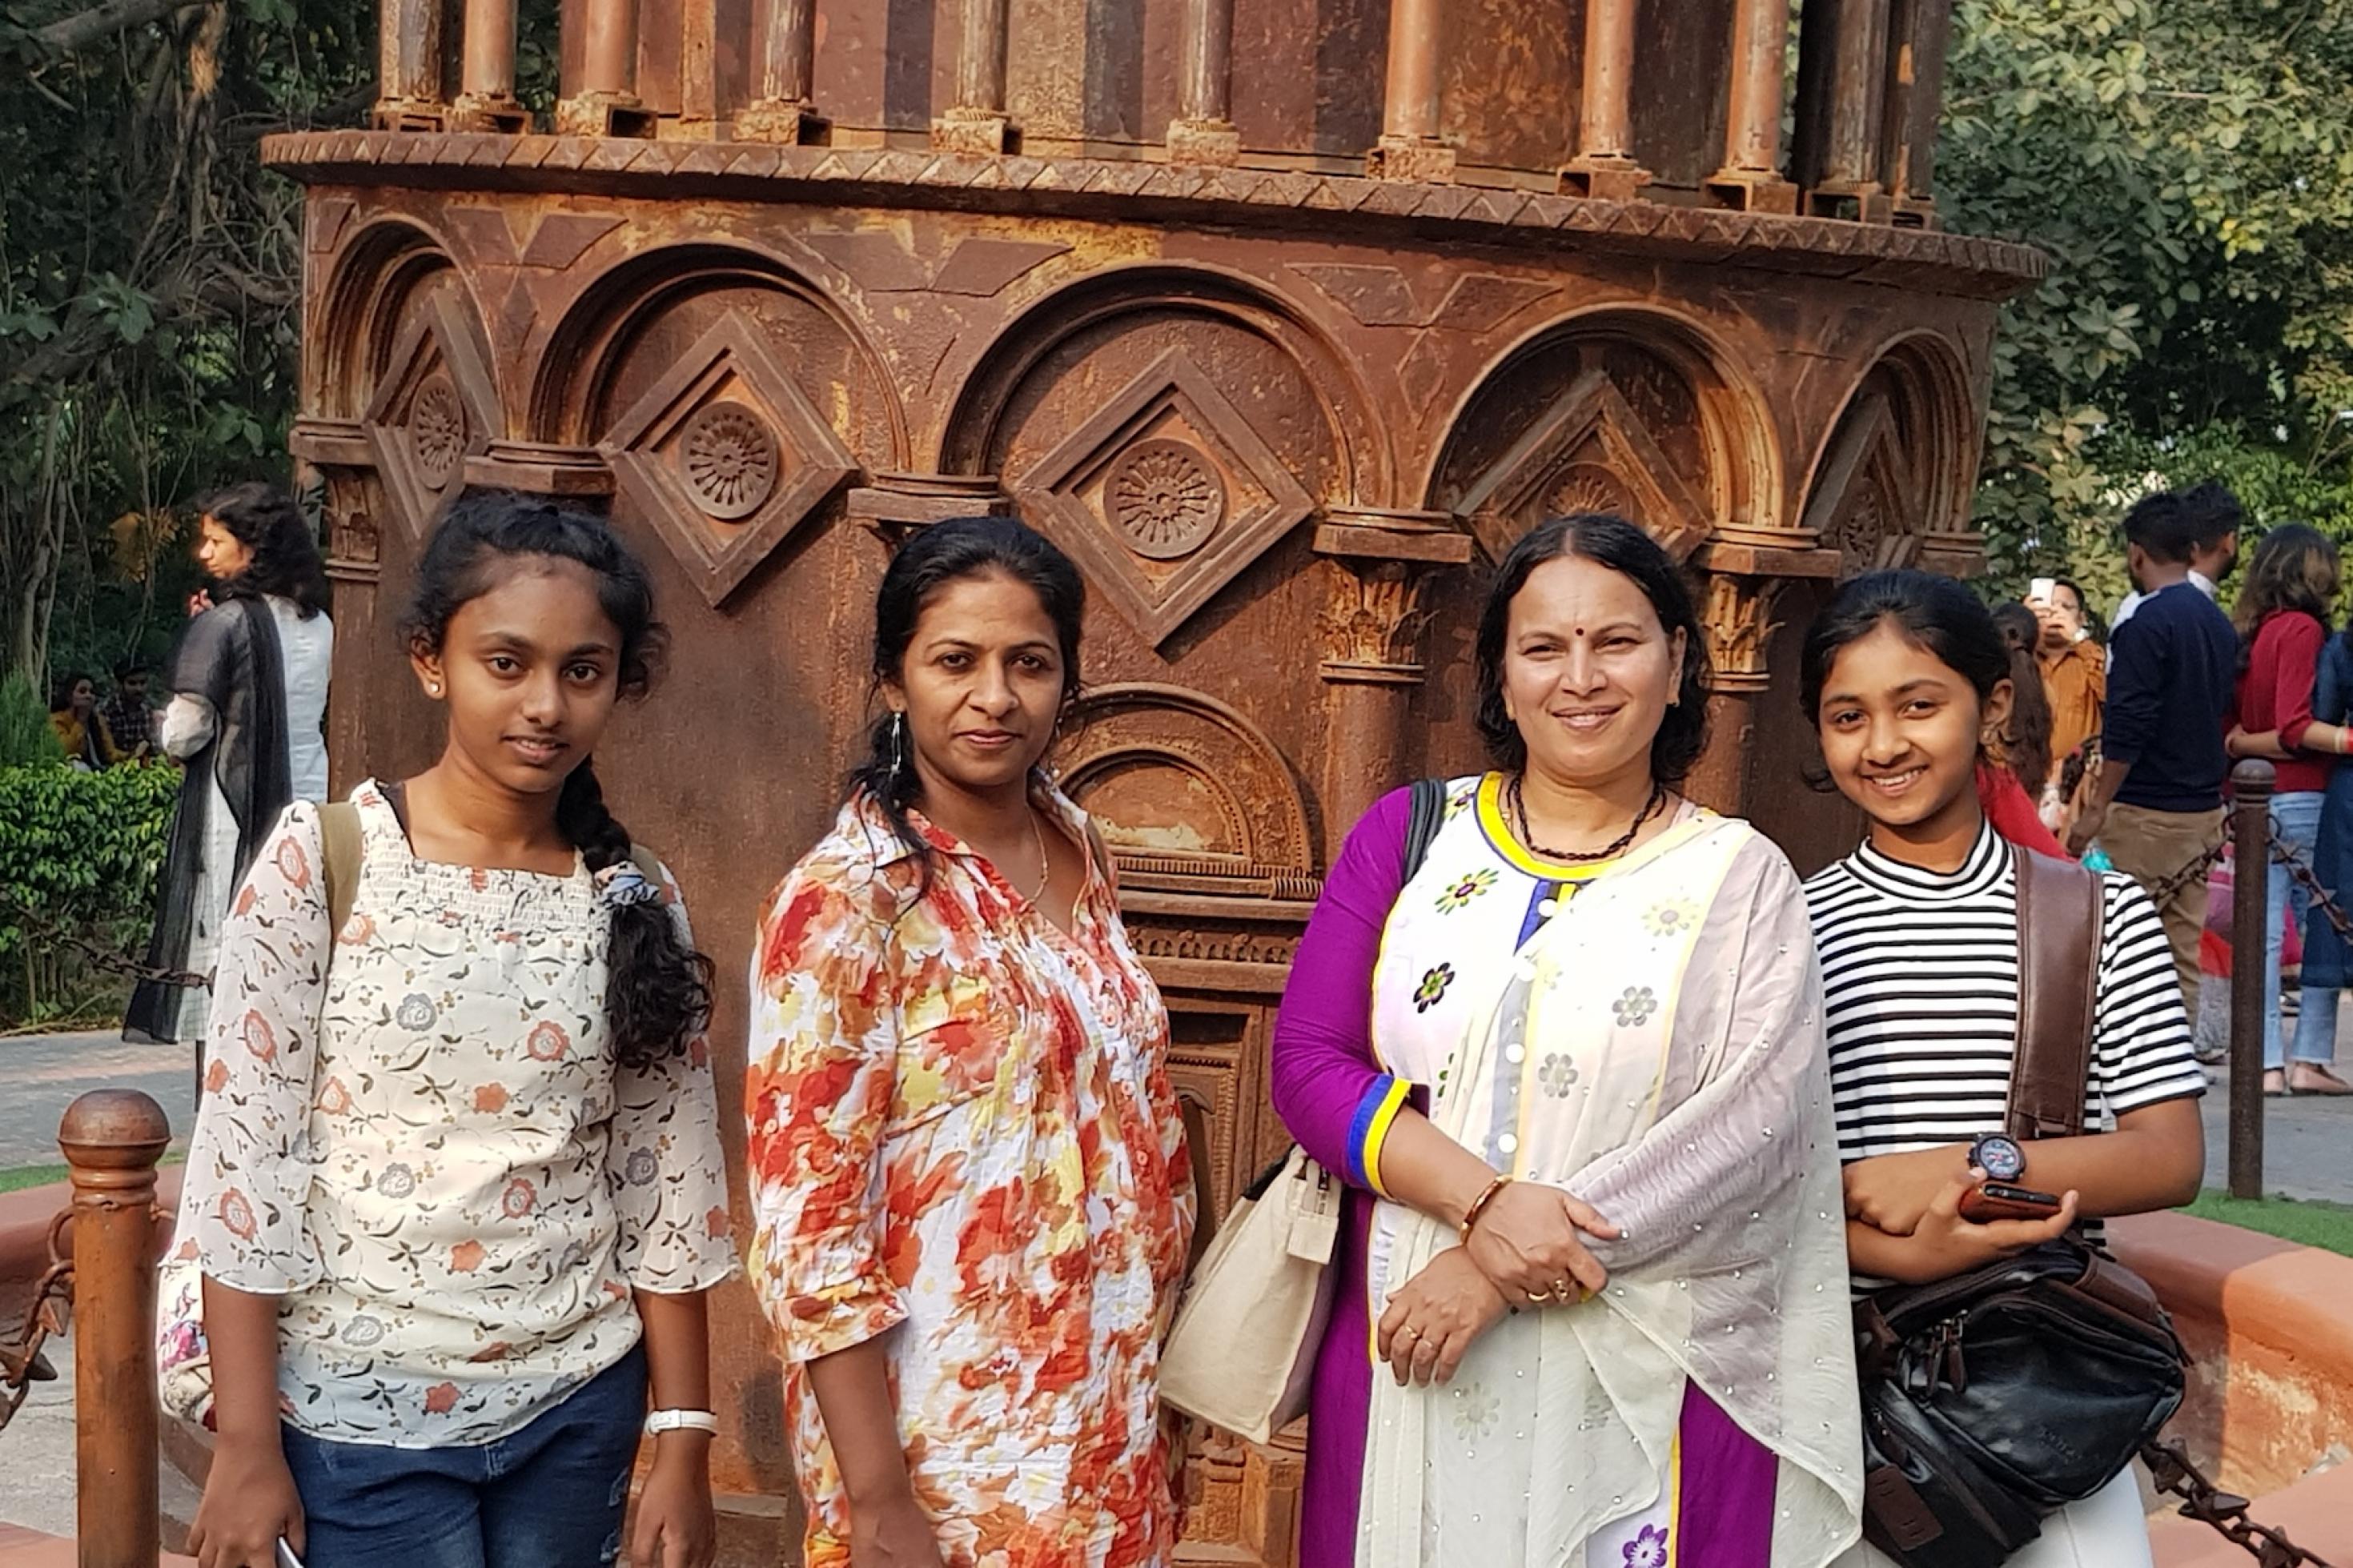 Vier Frauen verschiedenen Alters stehen vor einem Bauwerk oder Denkmal. Zwei von ihnen sind mit T-Shirt oder Bluse eher international gekleidet, zwei eher indisch oder traditionell. Alle blicken selbstbewusst und lächelnd in die Kamera.